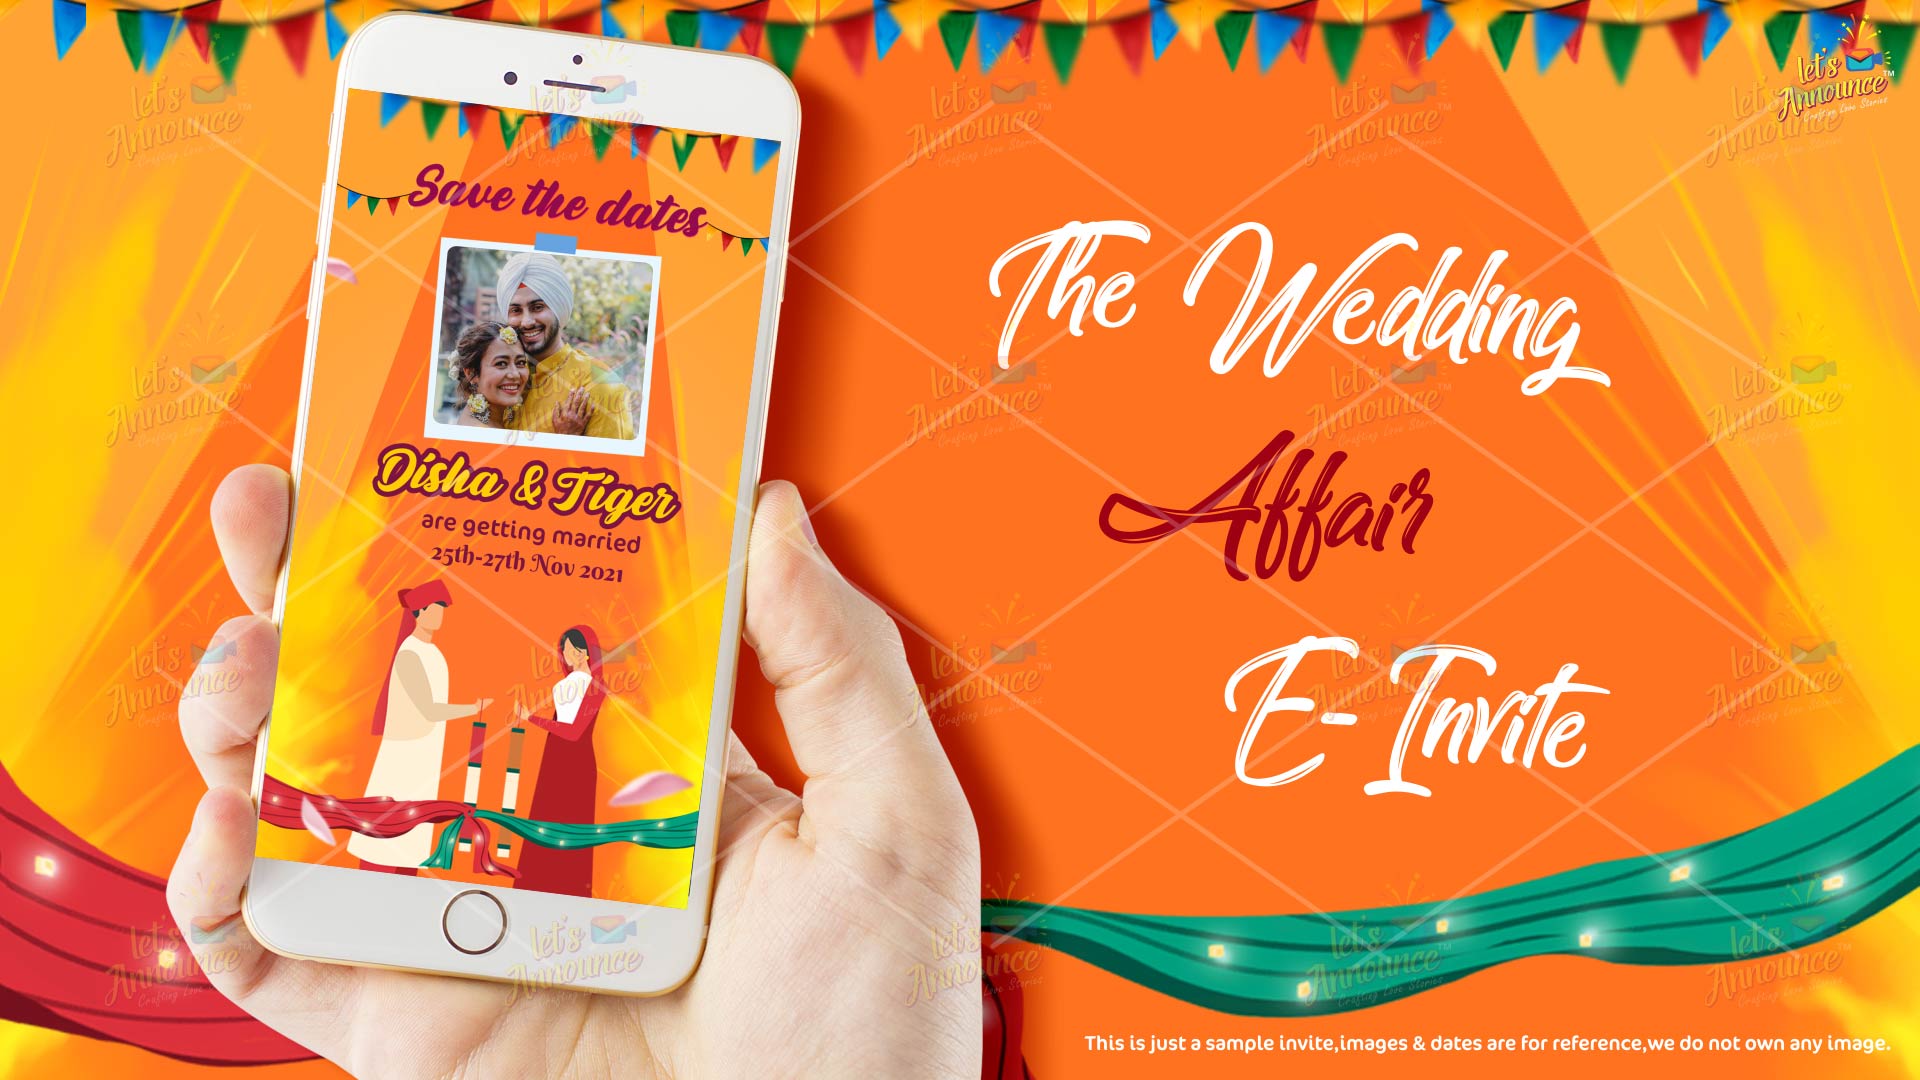 The Wedding Affair e Invite (USD 50$)